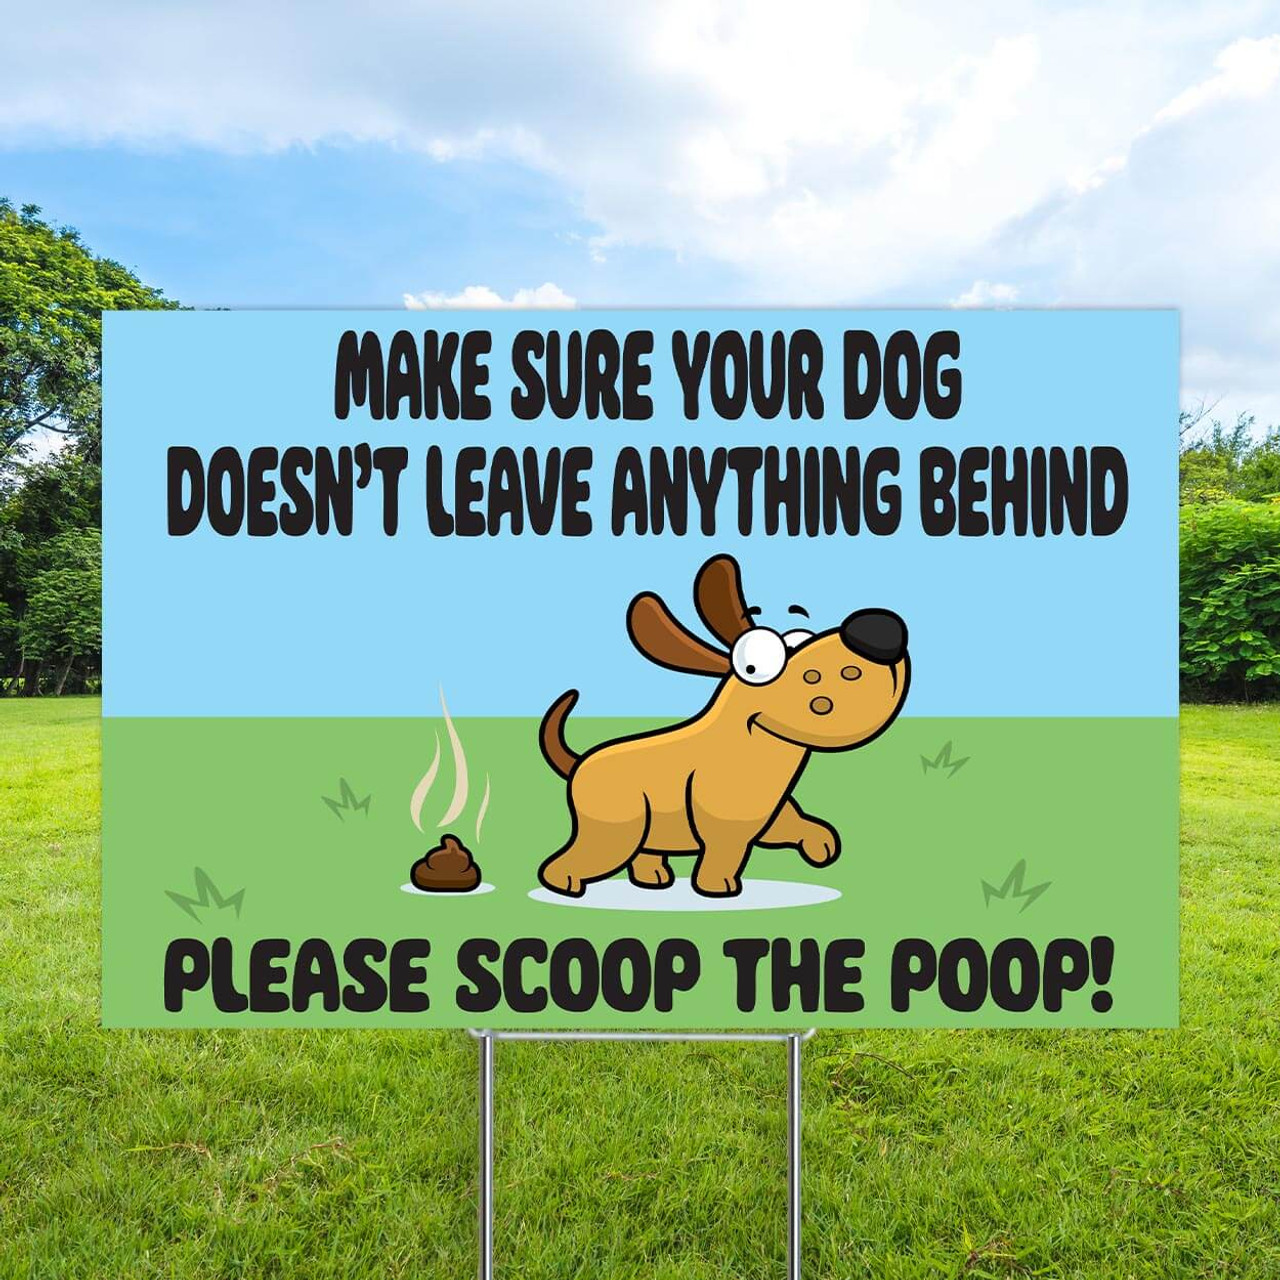 Scoop The Poop 12"x18" Coroplast Sign